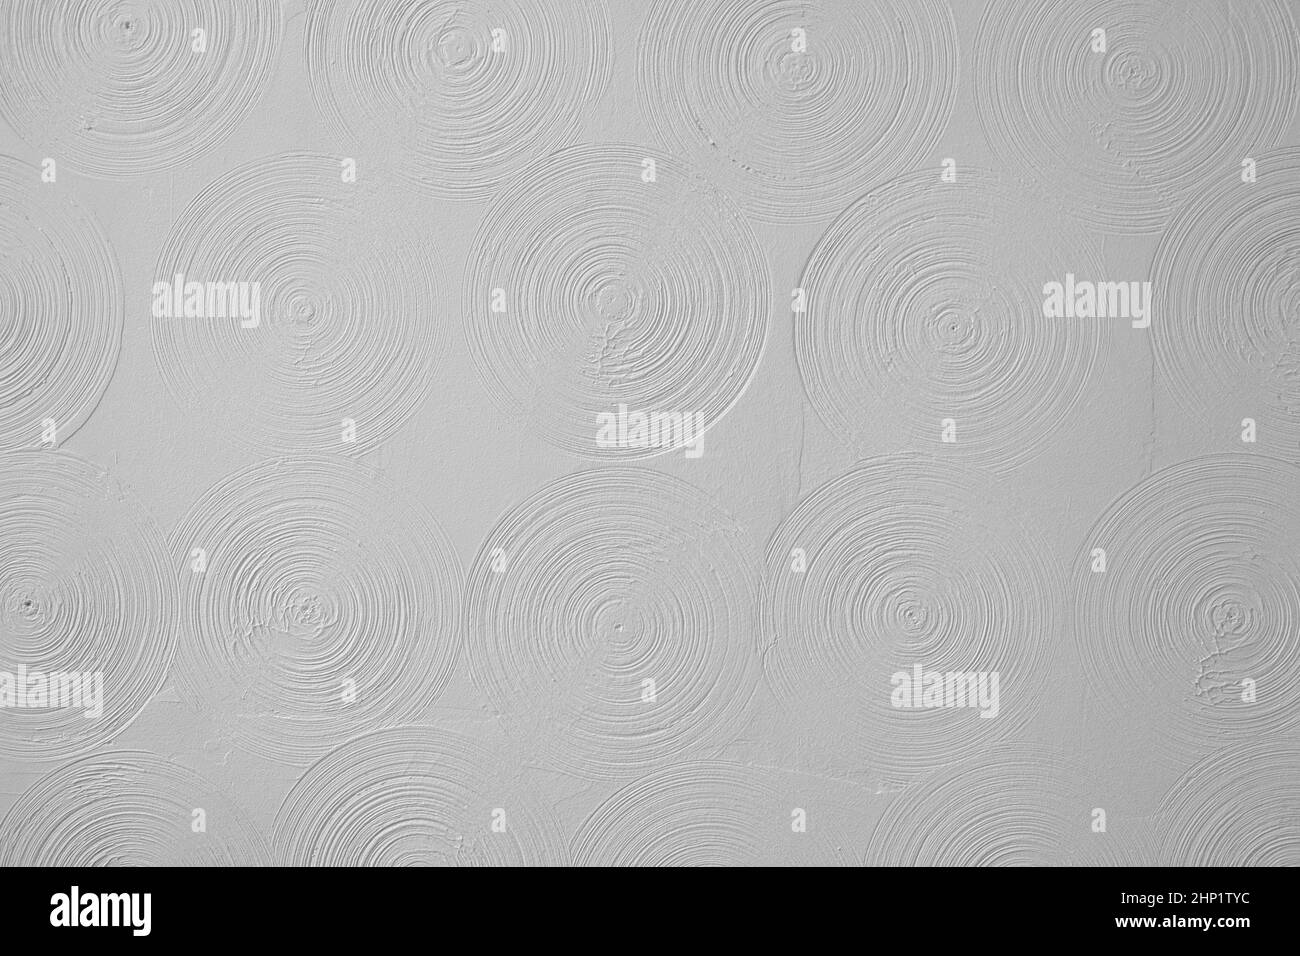 Abstrakter Hintergrund Gipskarton, spiralförmig volumetrisch, weiße Kreise, futuristischer Hintergrund, selektiver Fokus Stockfoto